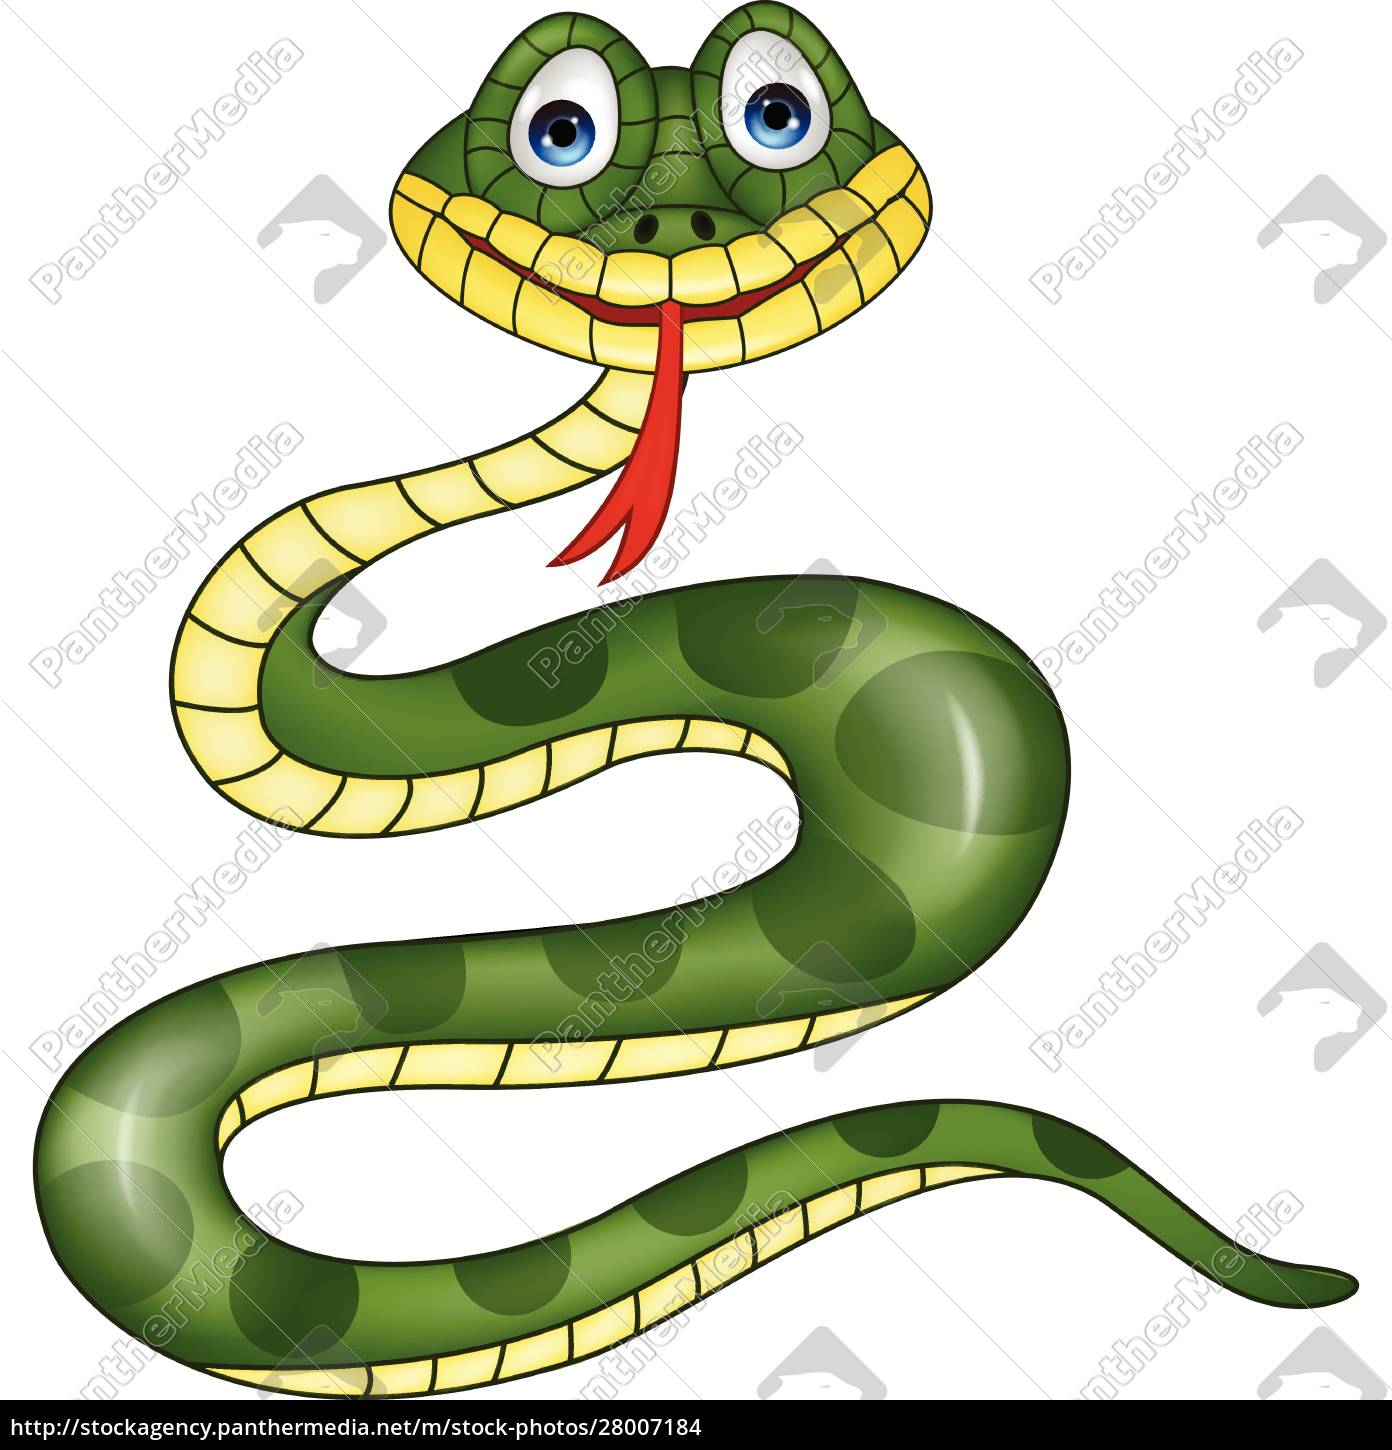 Cobra verde ícone de desenho animado animal réptil da selva